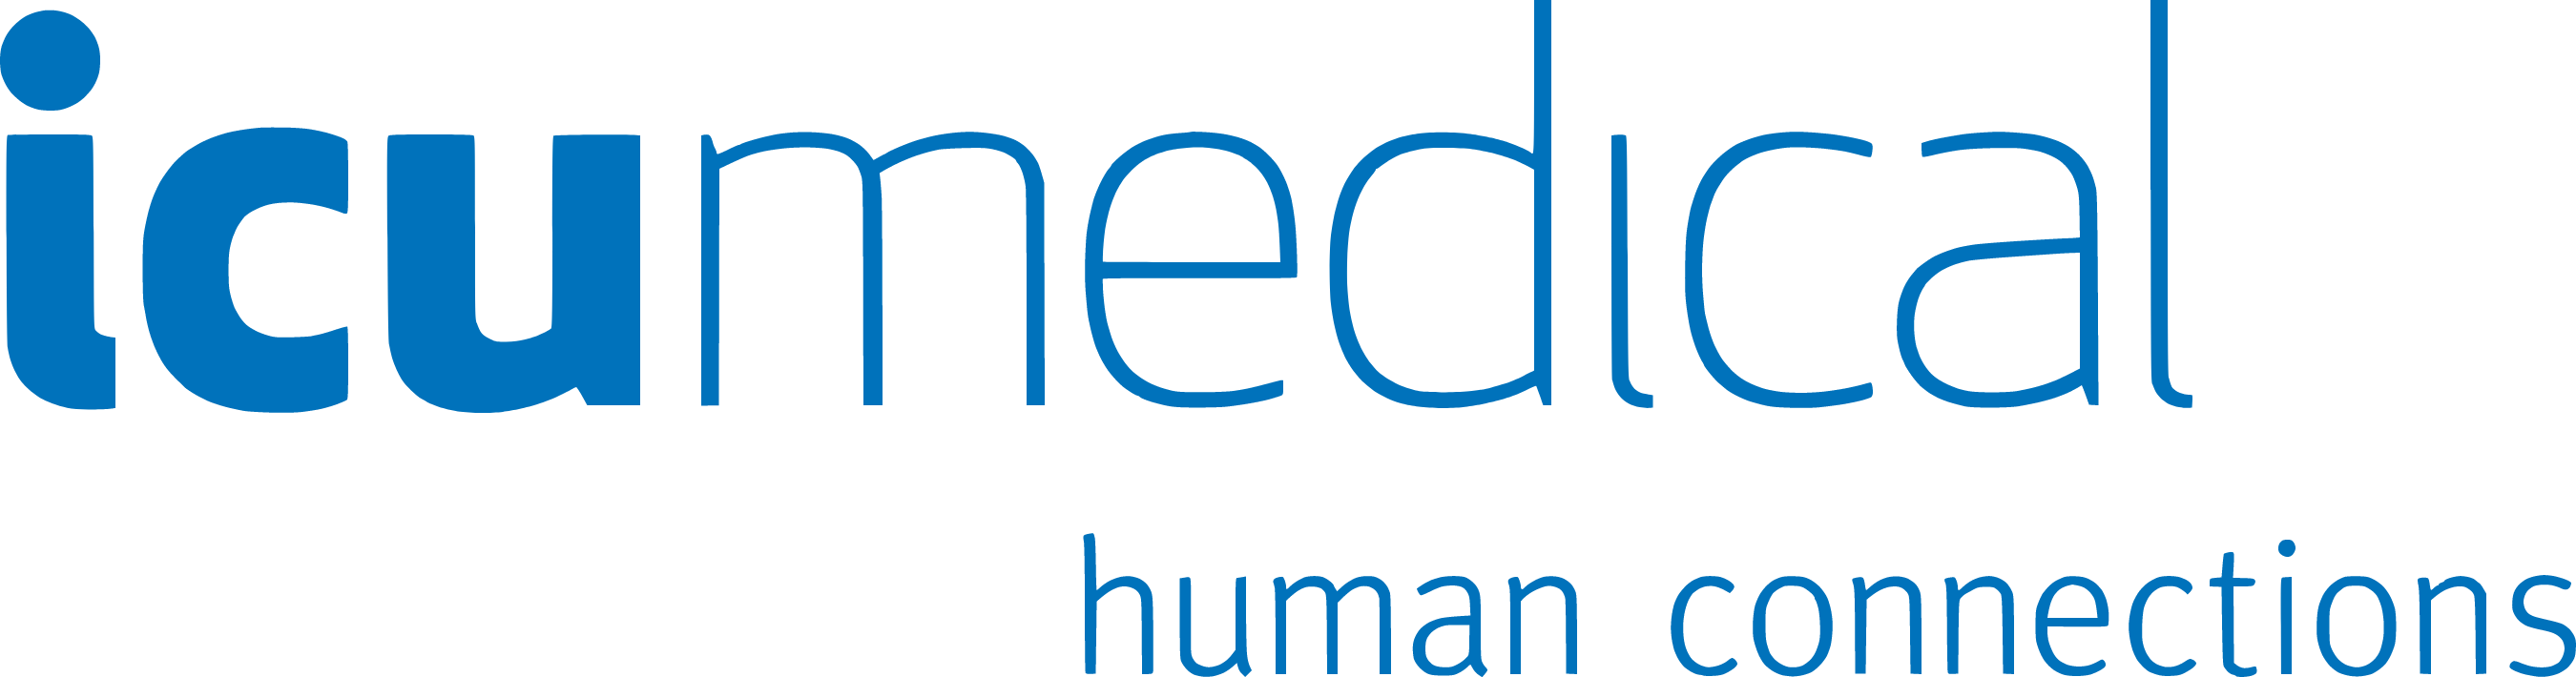 ICUmedical logo